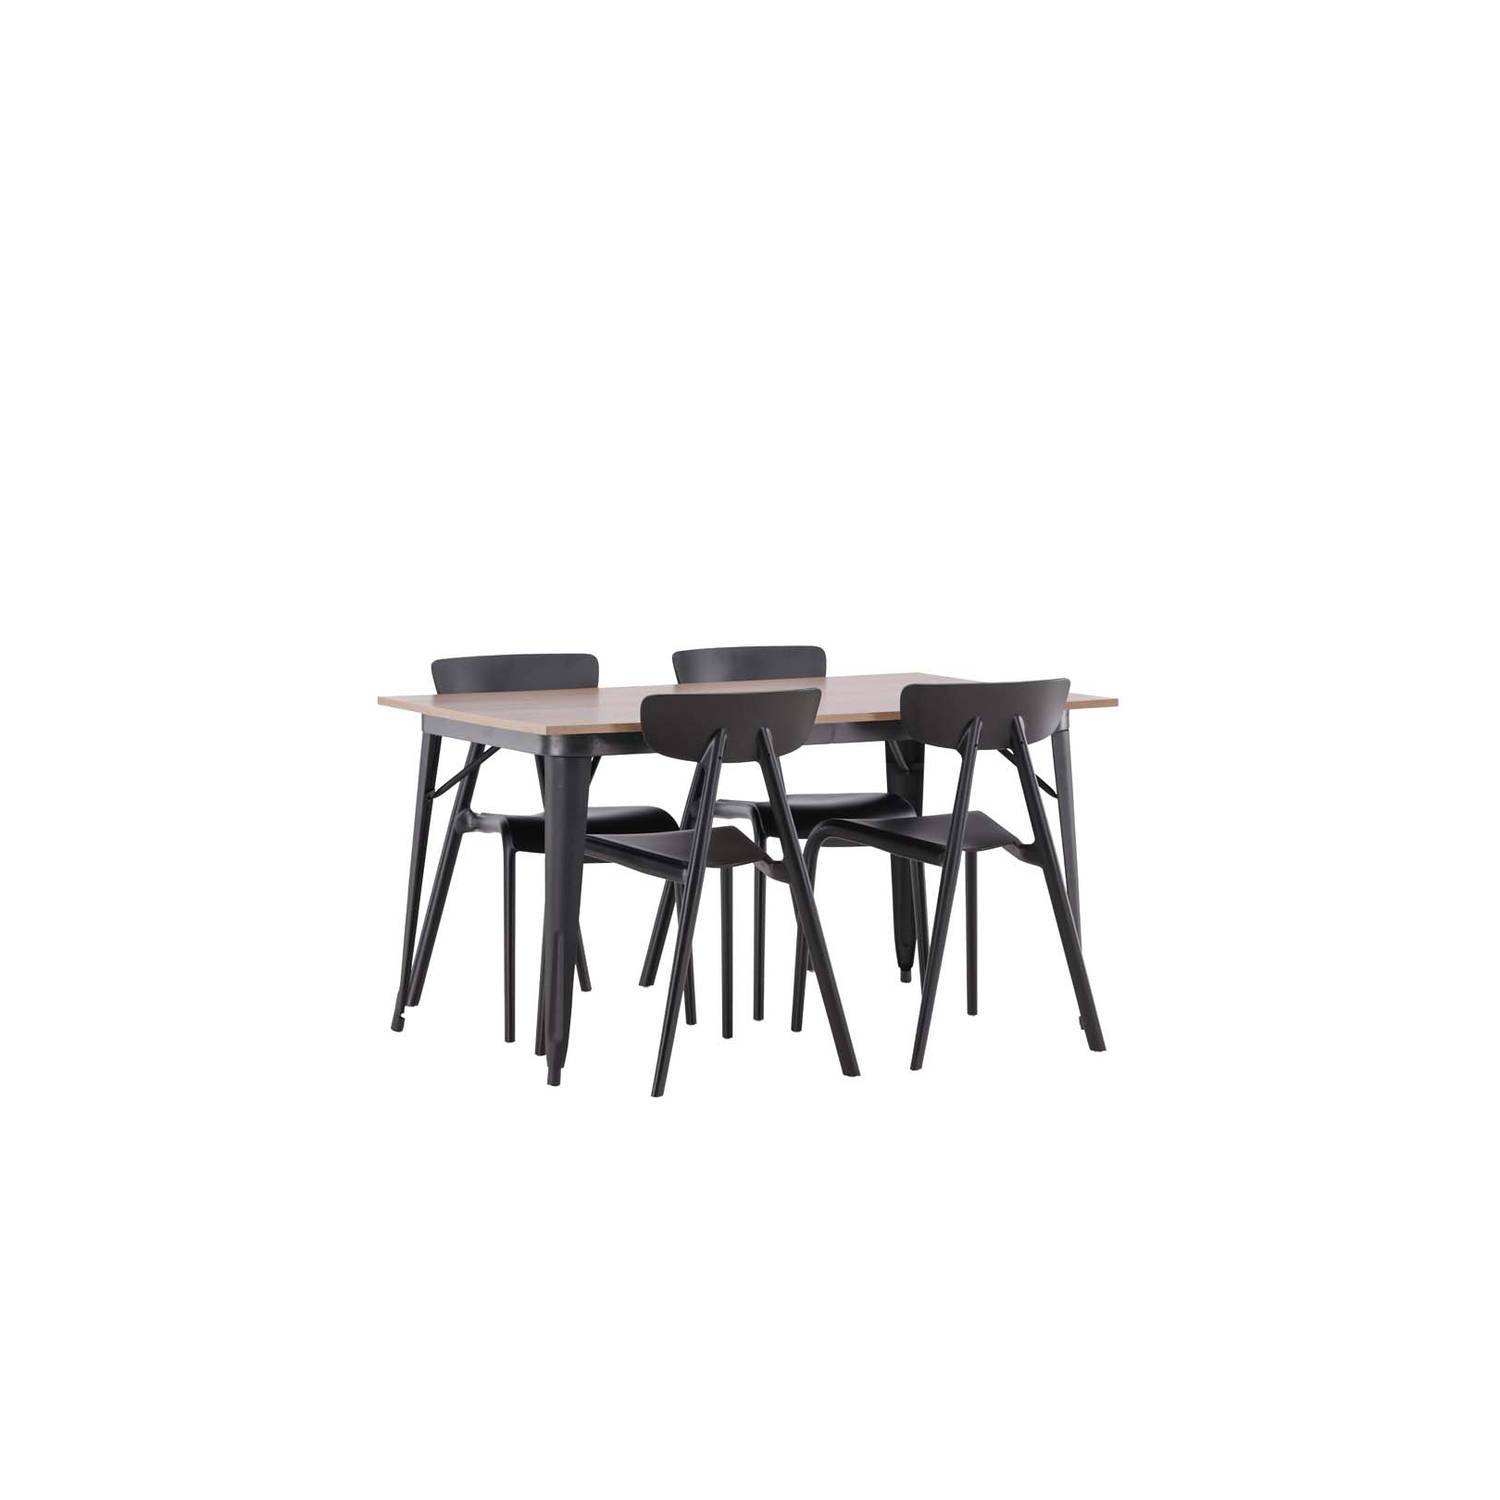 Tempe eethoek tafel okkernoot decor en 4 Ursholmen stoelen zwart.